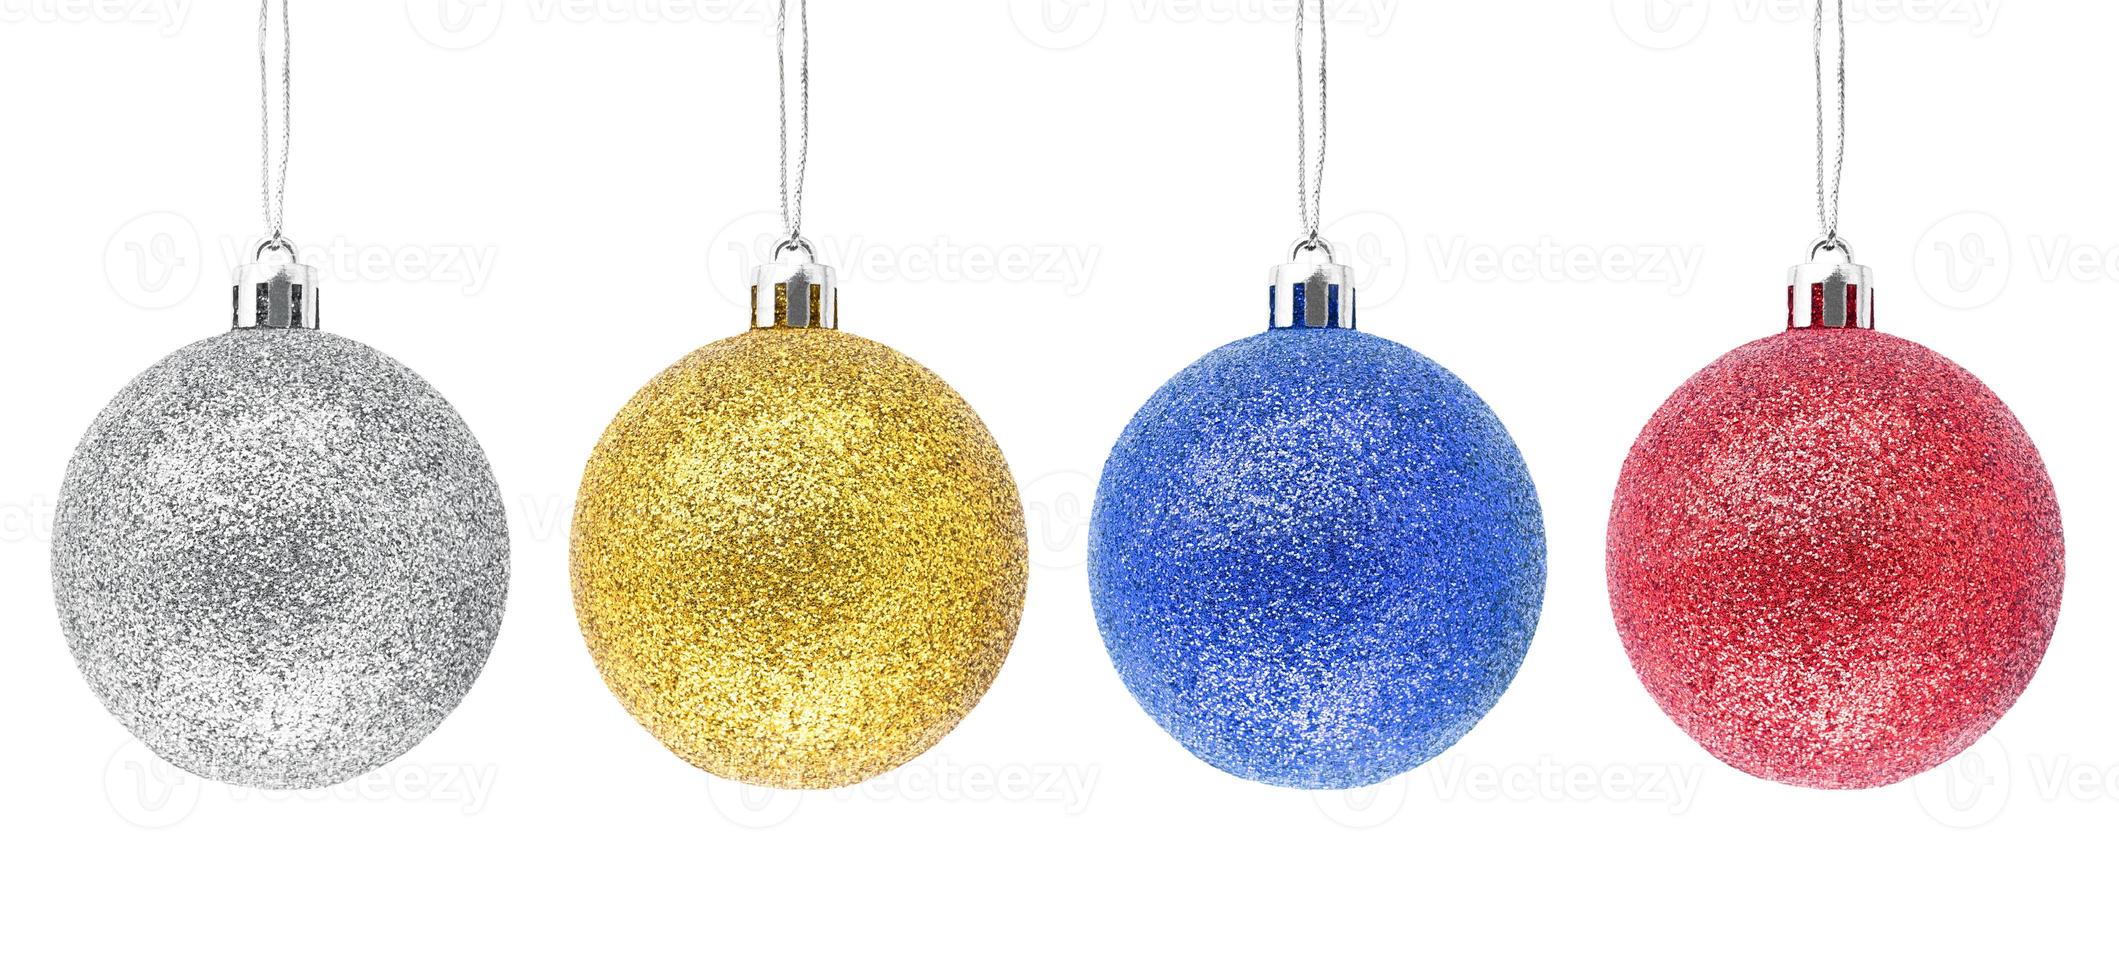 palline di natale con glitter argento, oro, blu, rosso da appendere foto